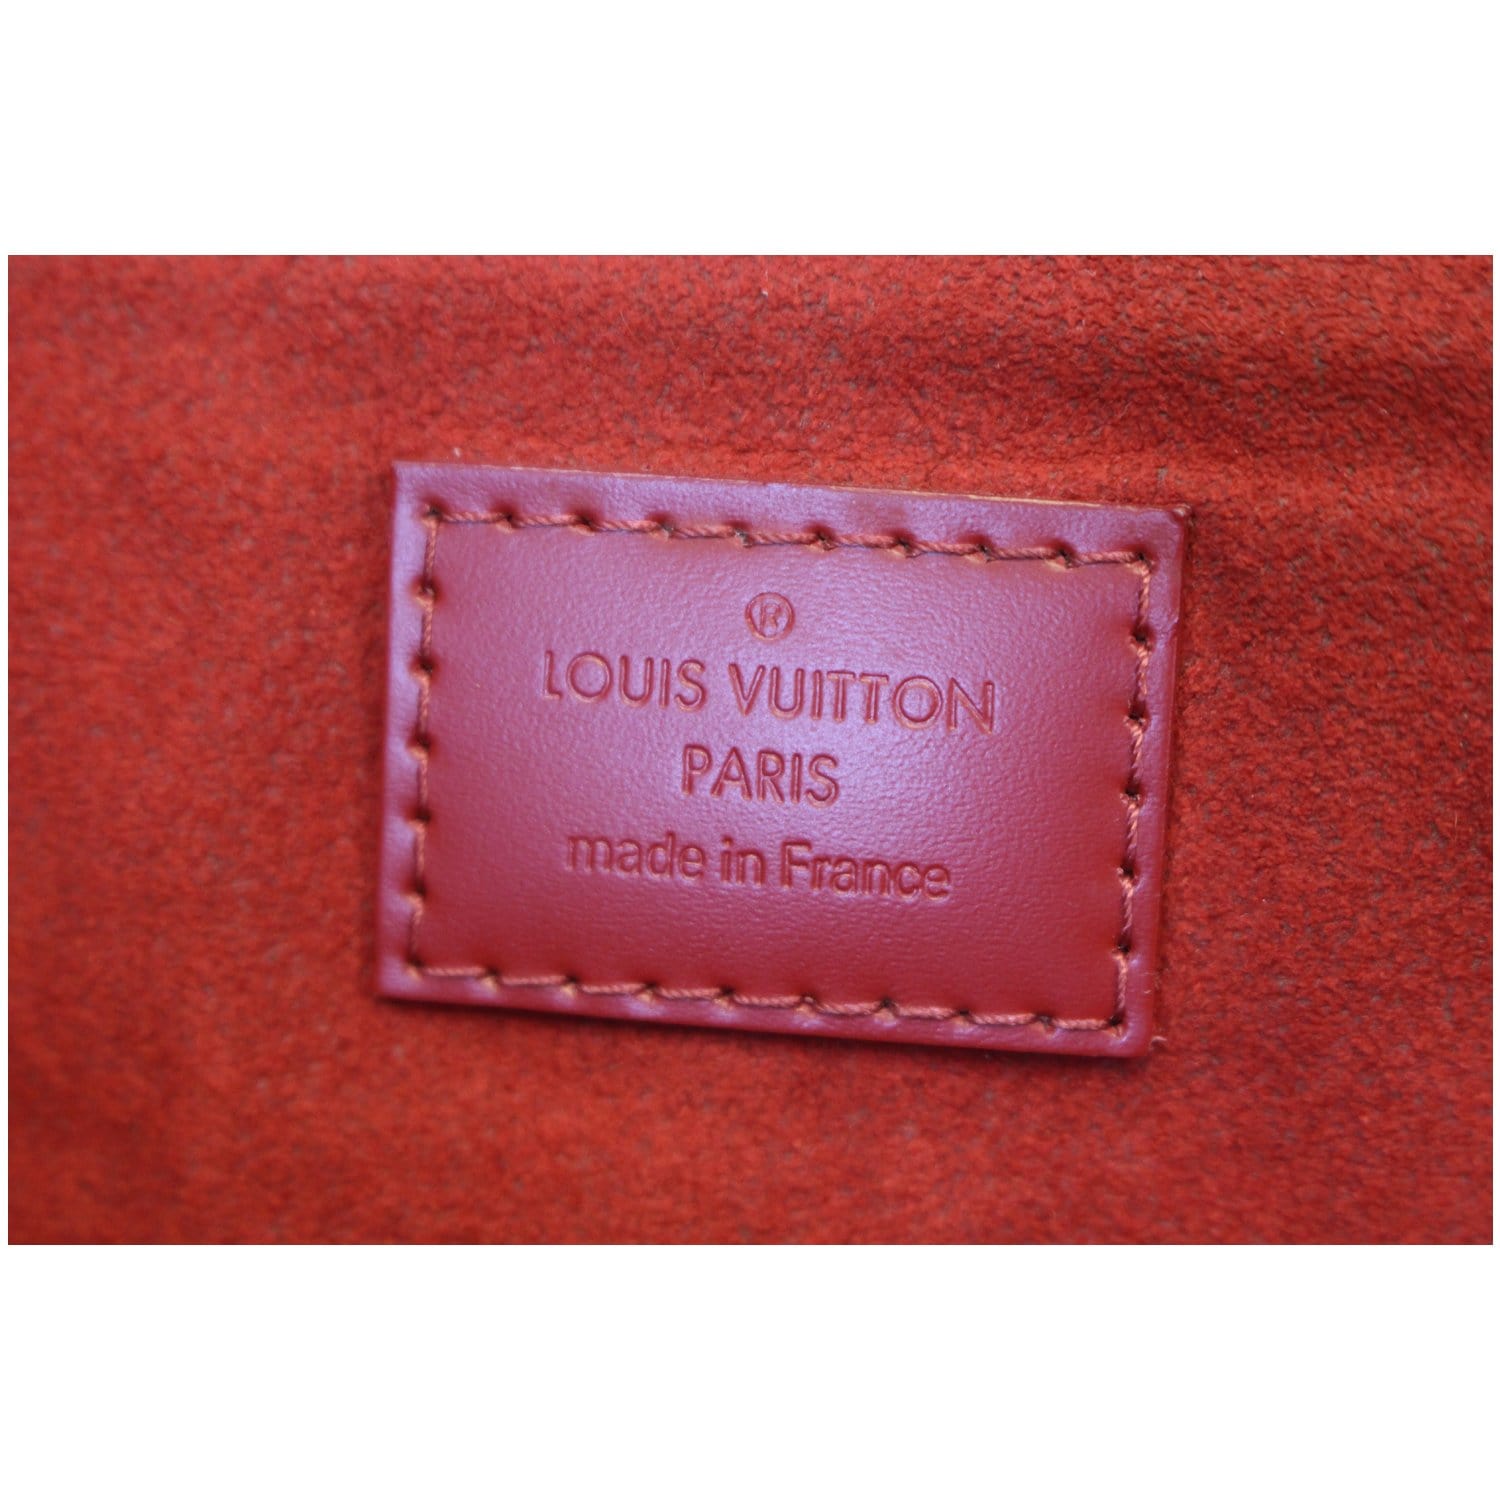 NEW - Louis Vuitton Tote Caissa PM Cerise Damier Canvas รุ่นใหม่มา